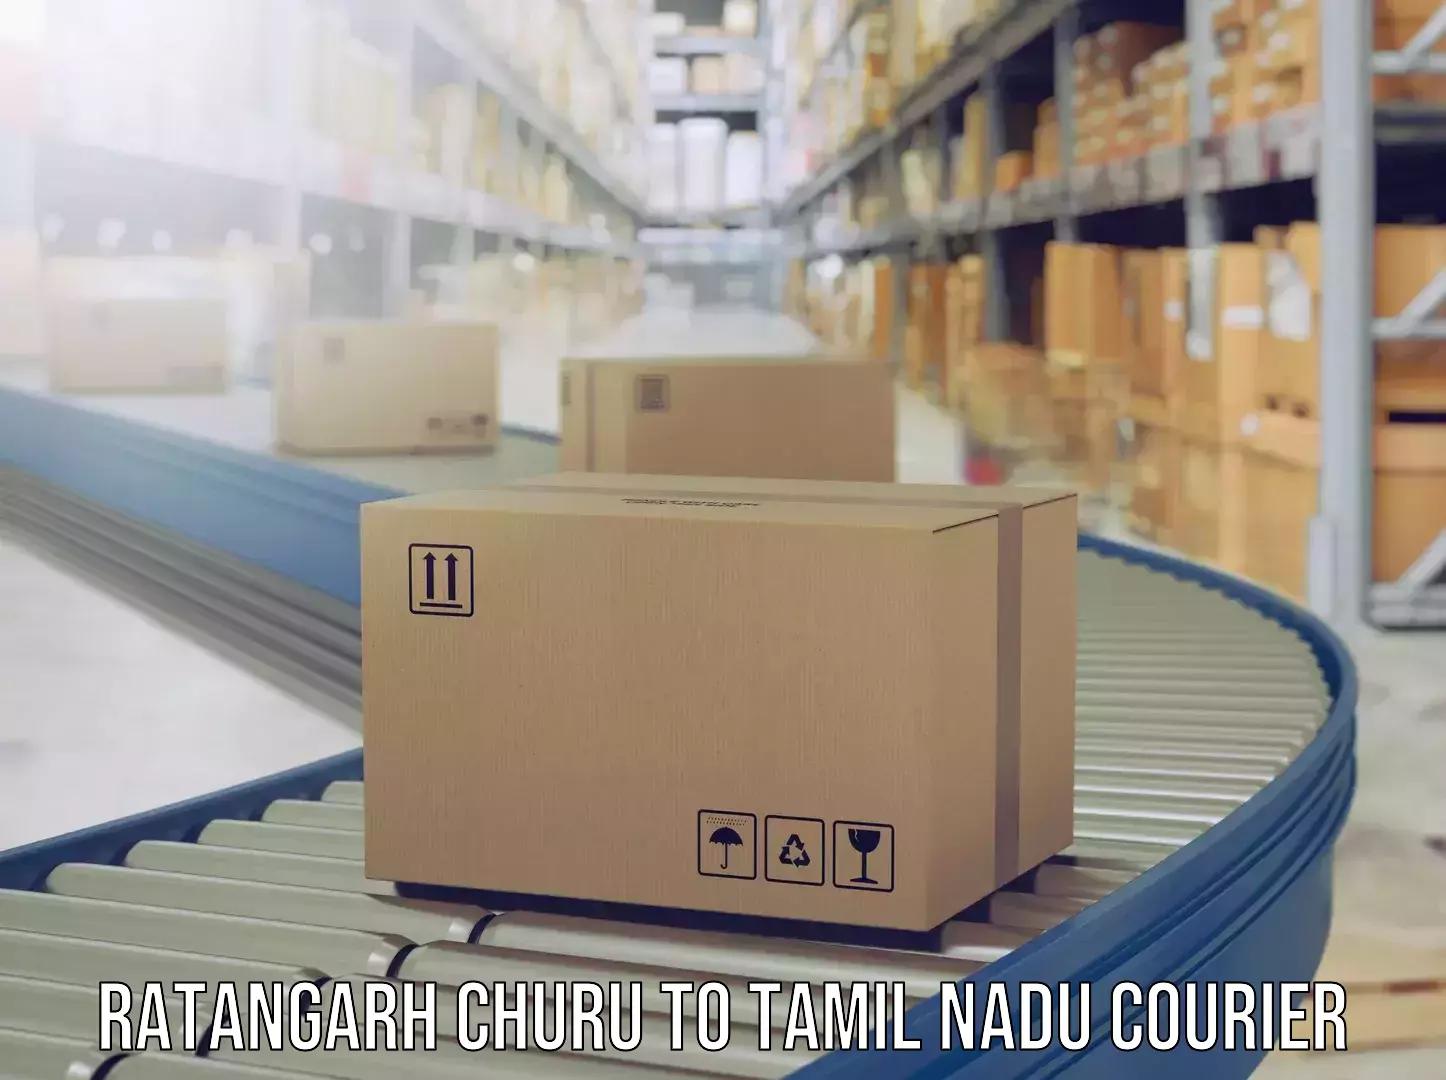 Luggage shipment strategy Ratangarh Churu to Kanyakumari